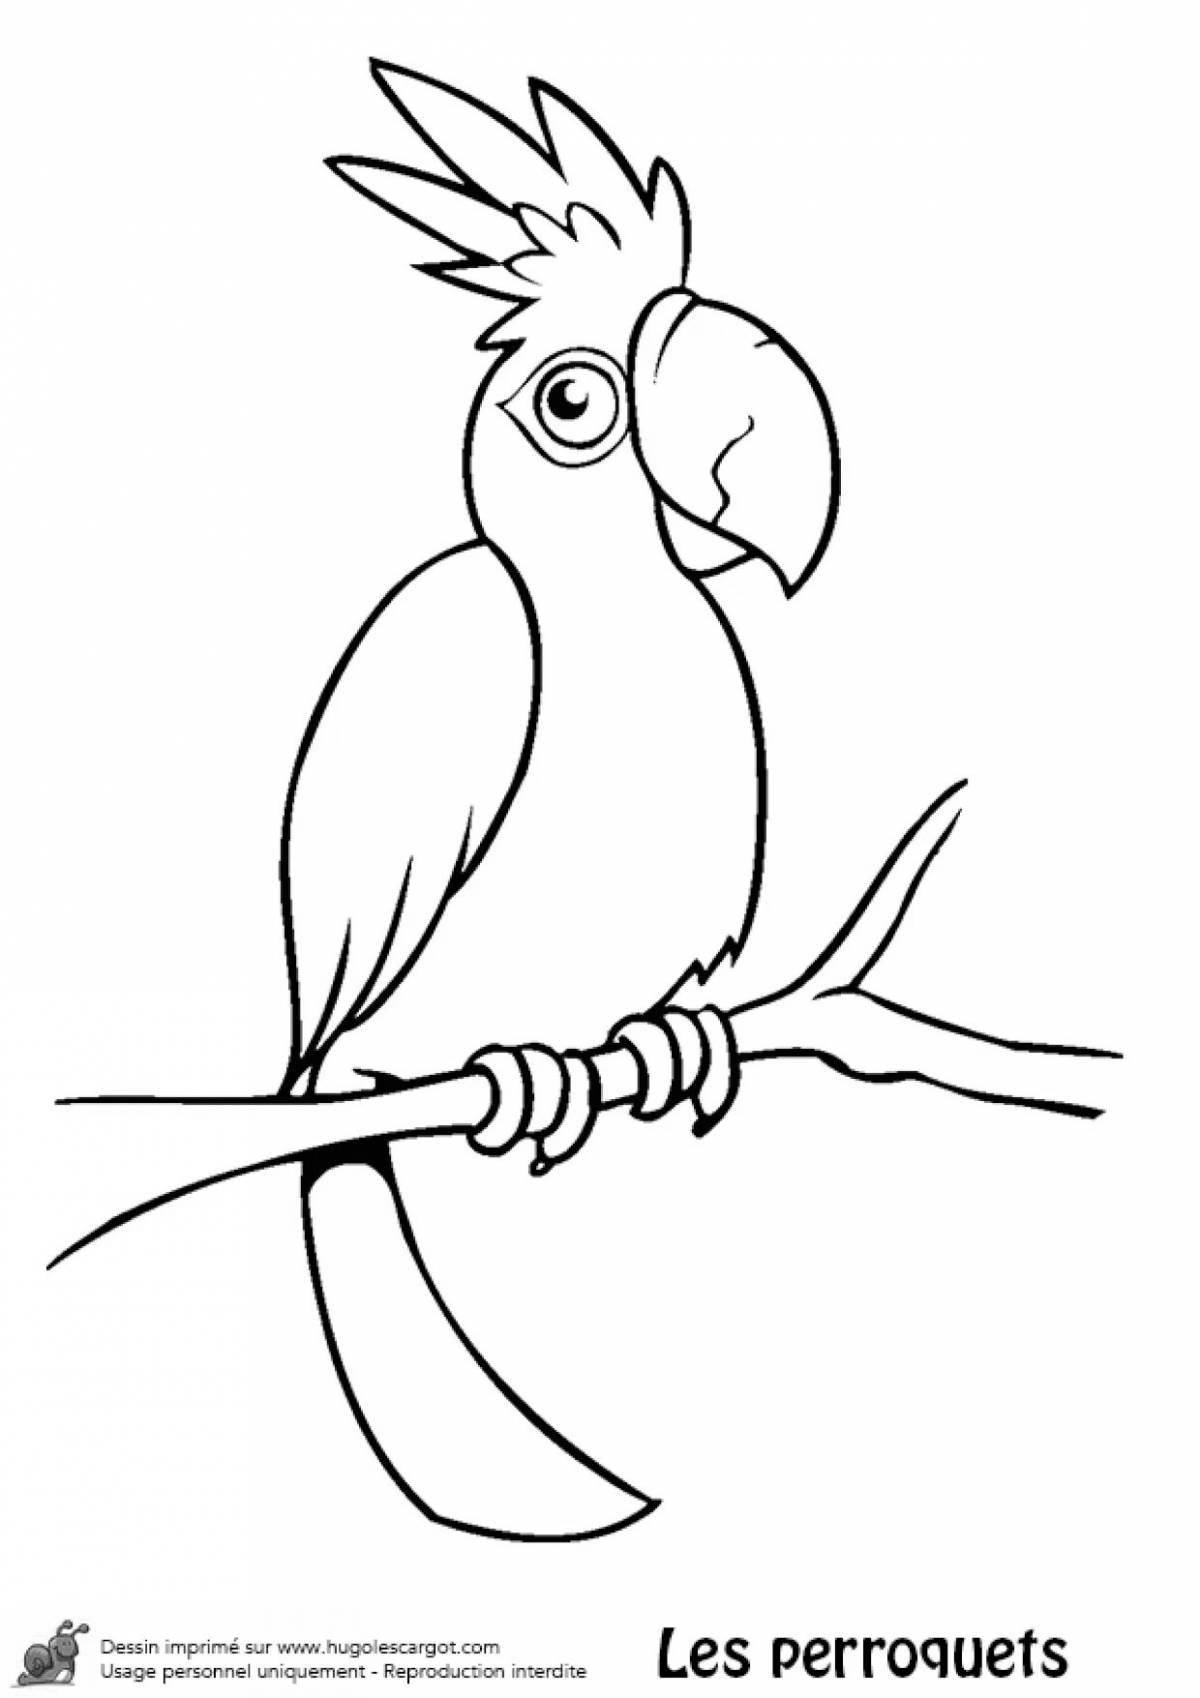 Волшебный попугай раскраски для детей